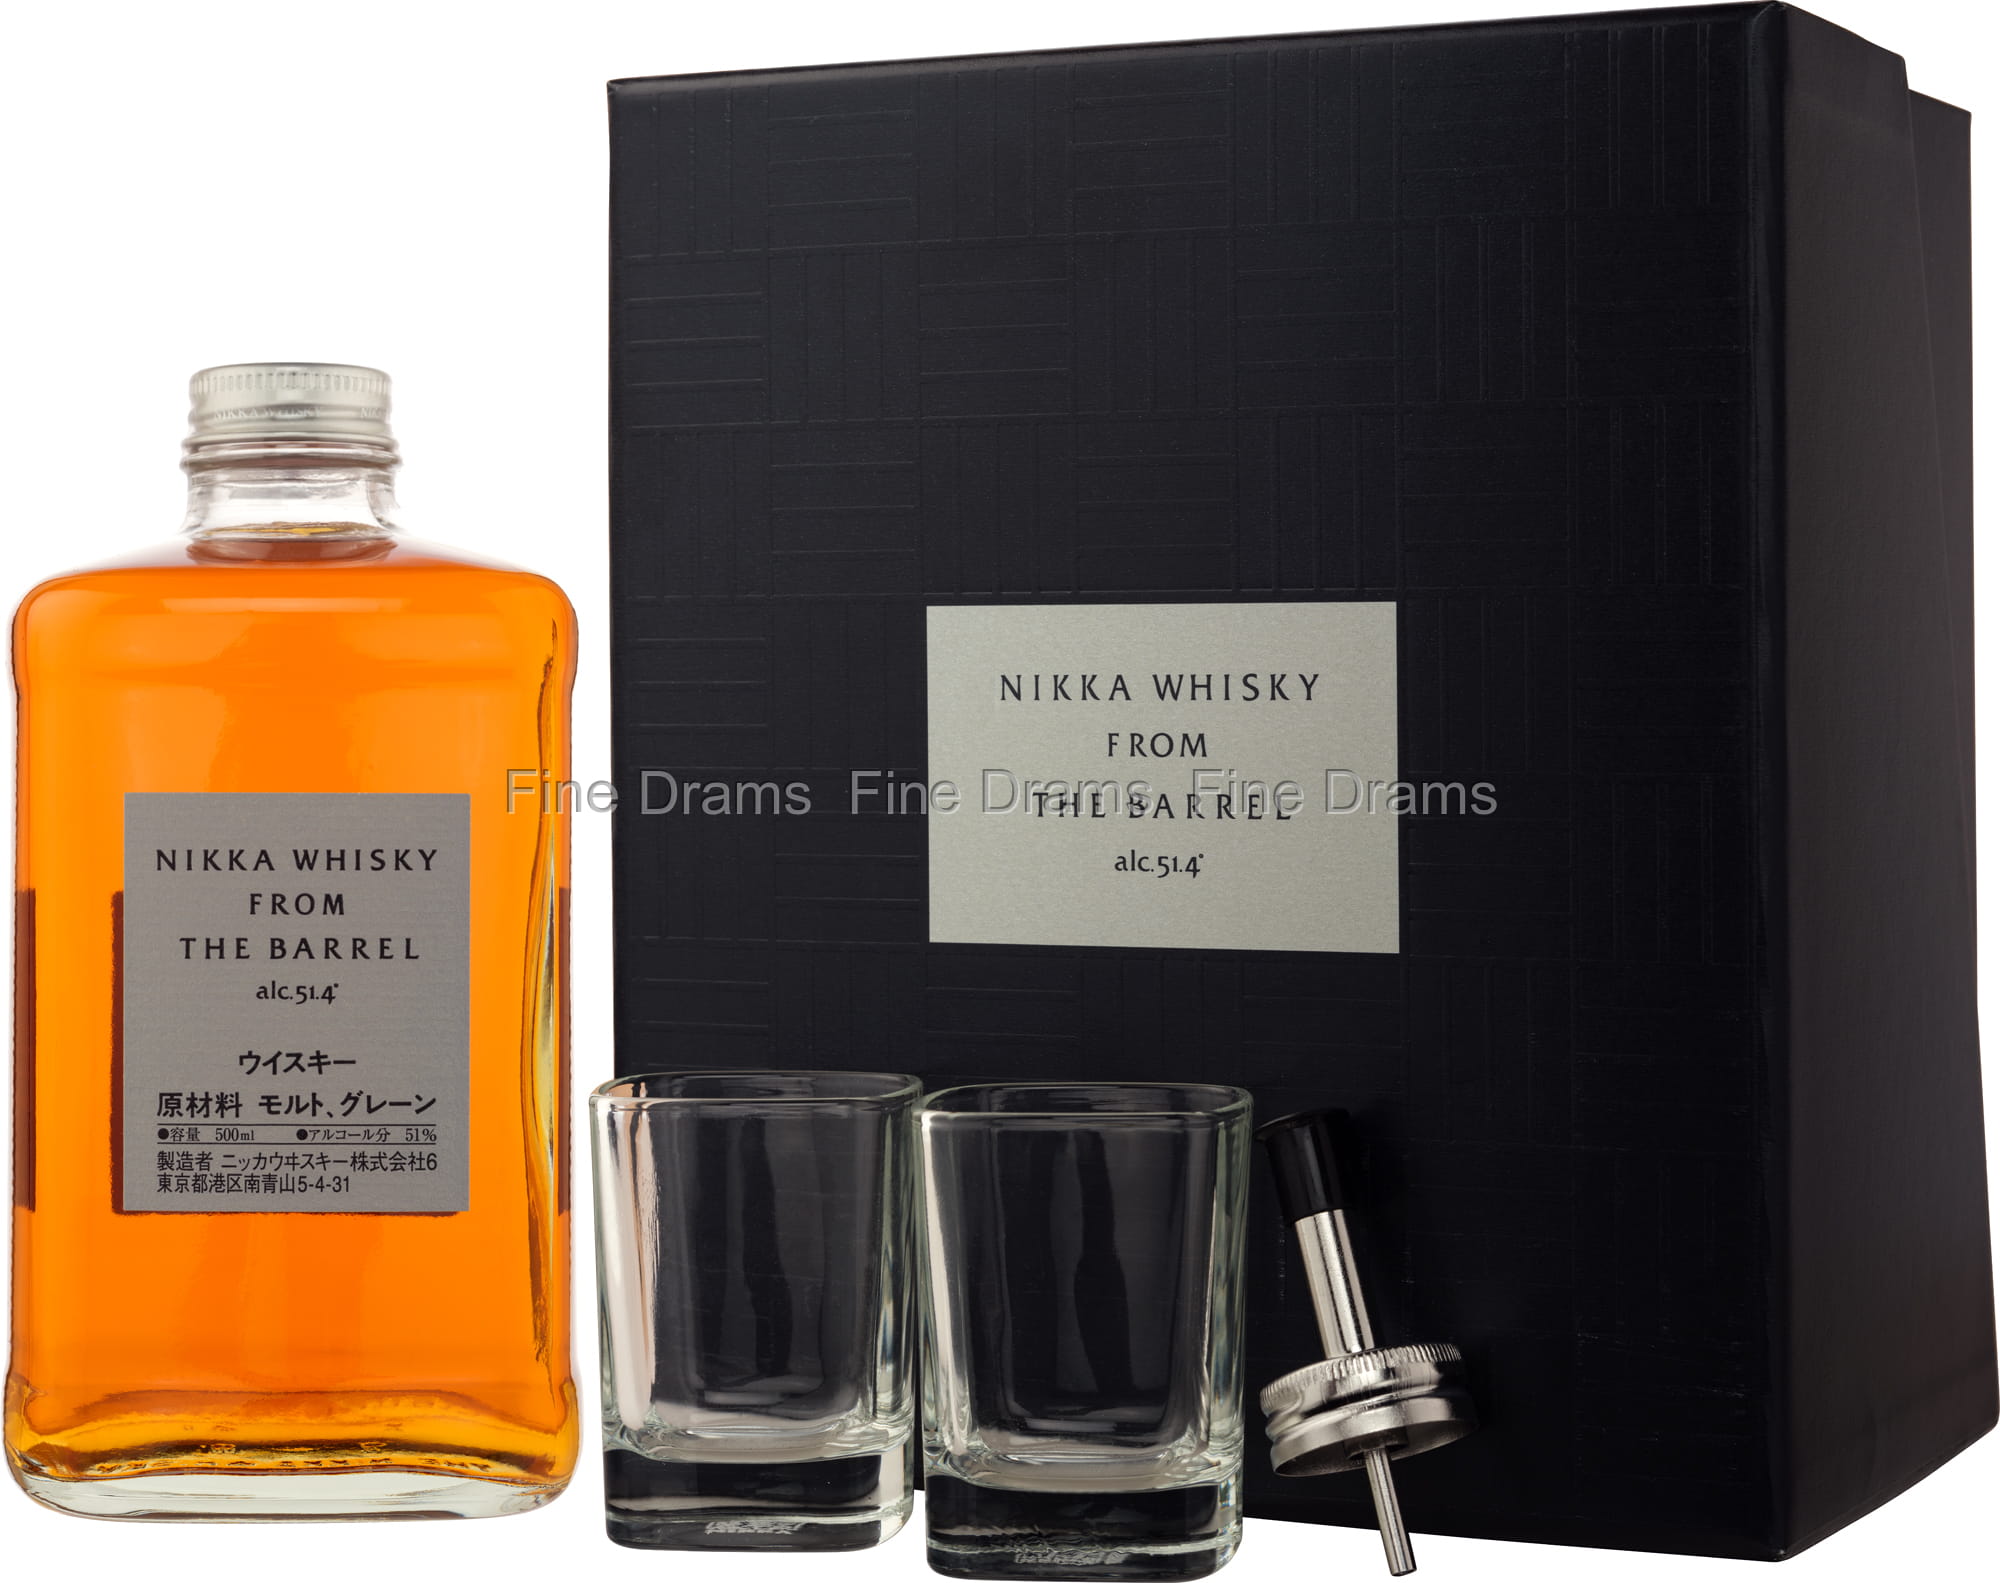 Nikka Whisky From The Barrel Gift pack - 2 Glasses